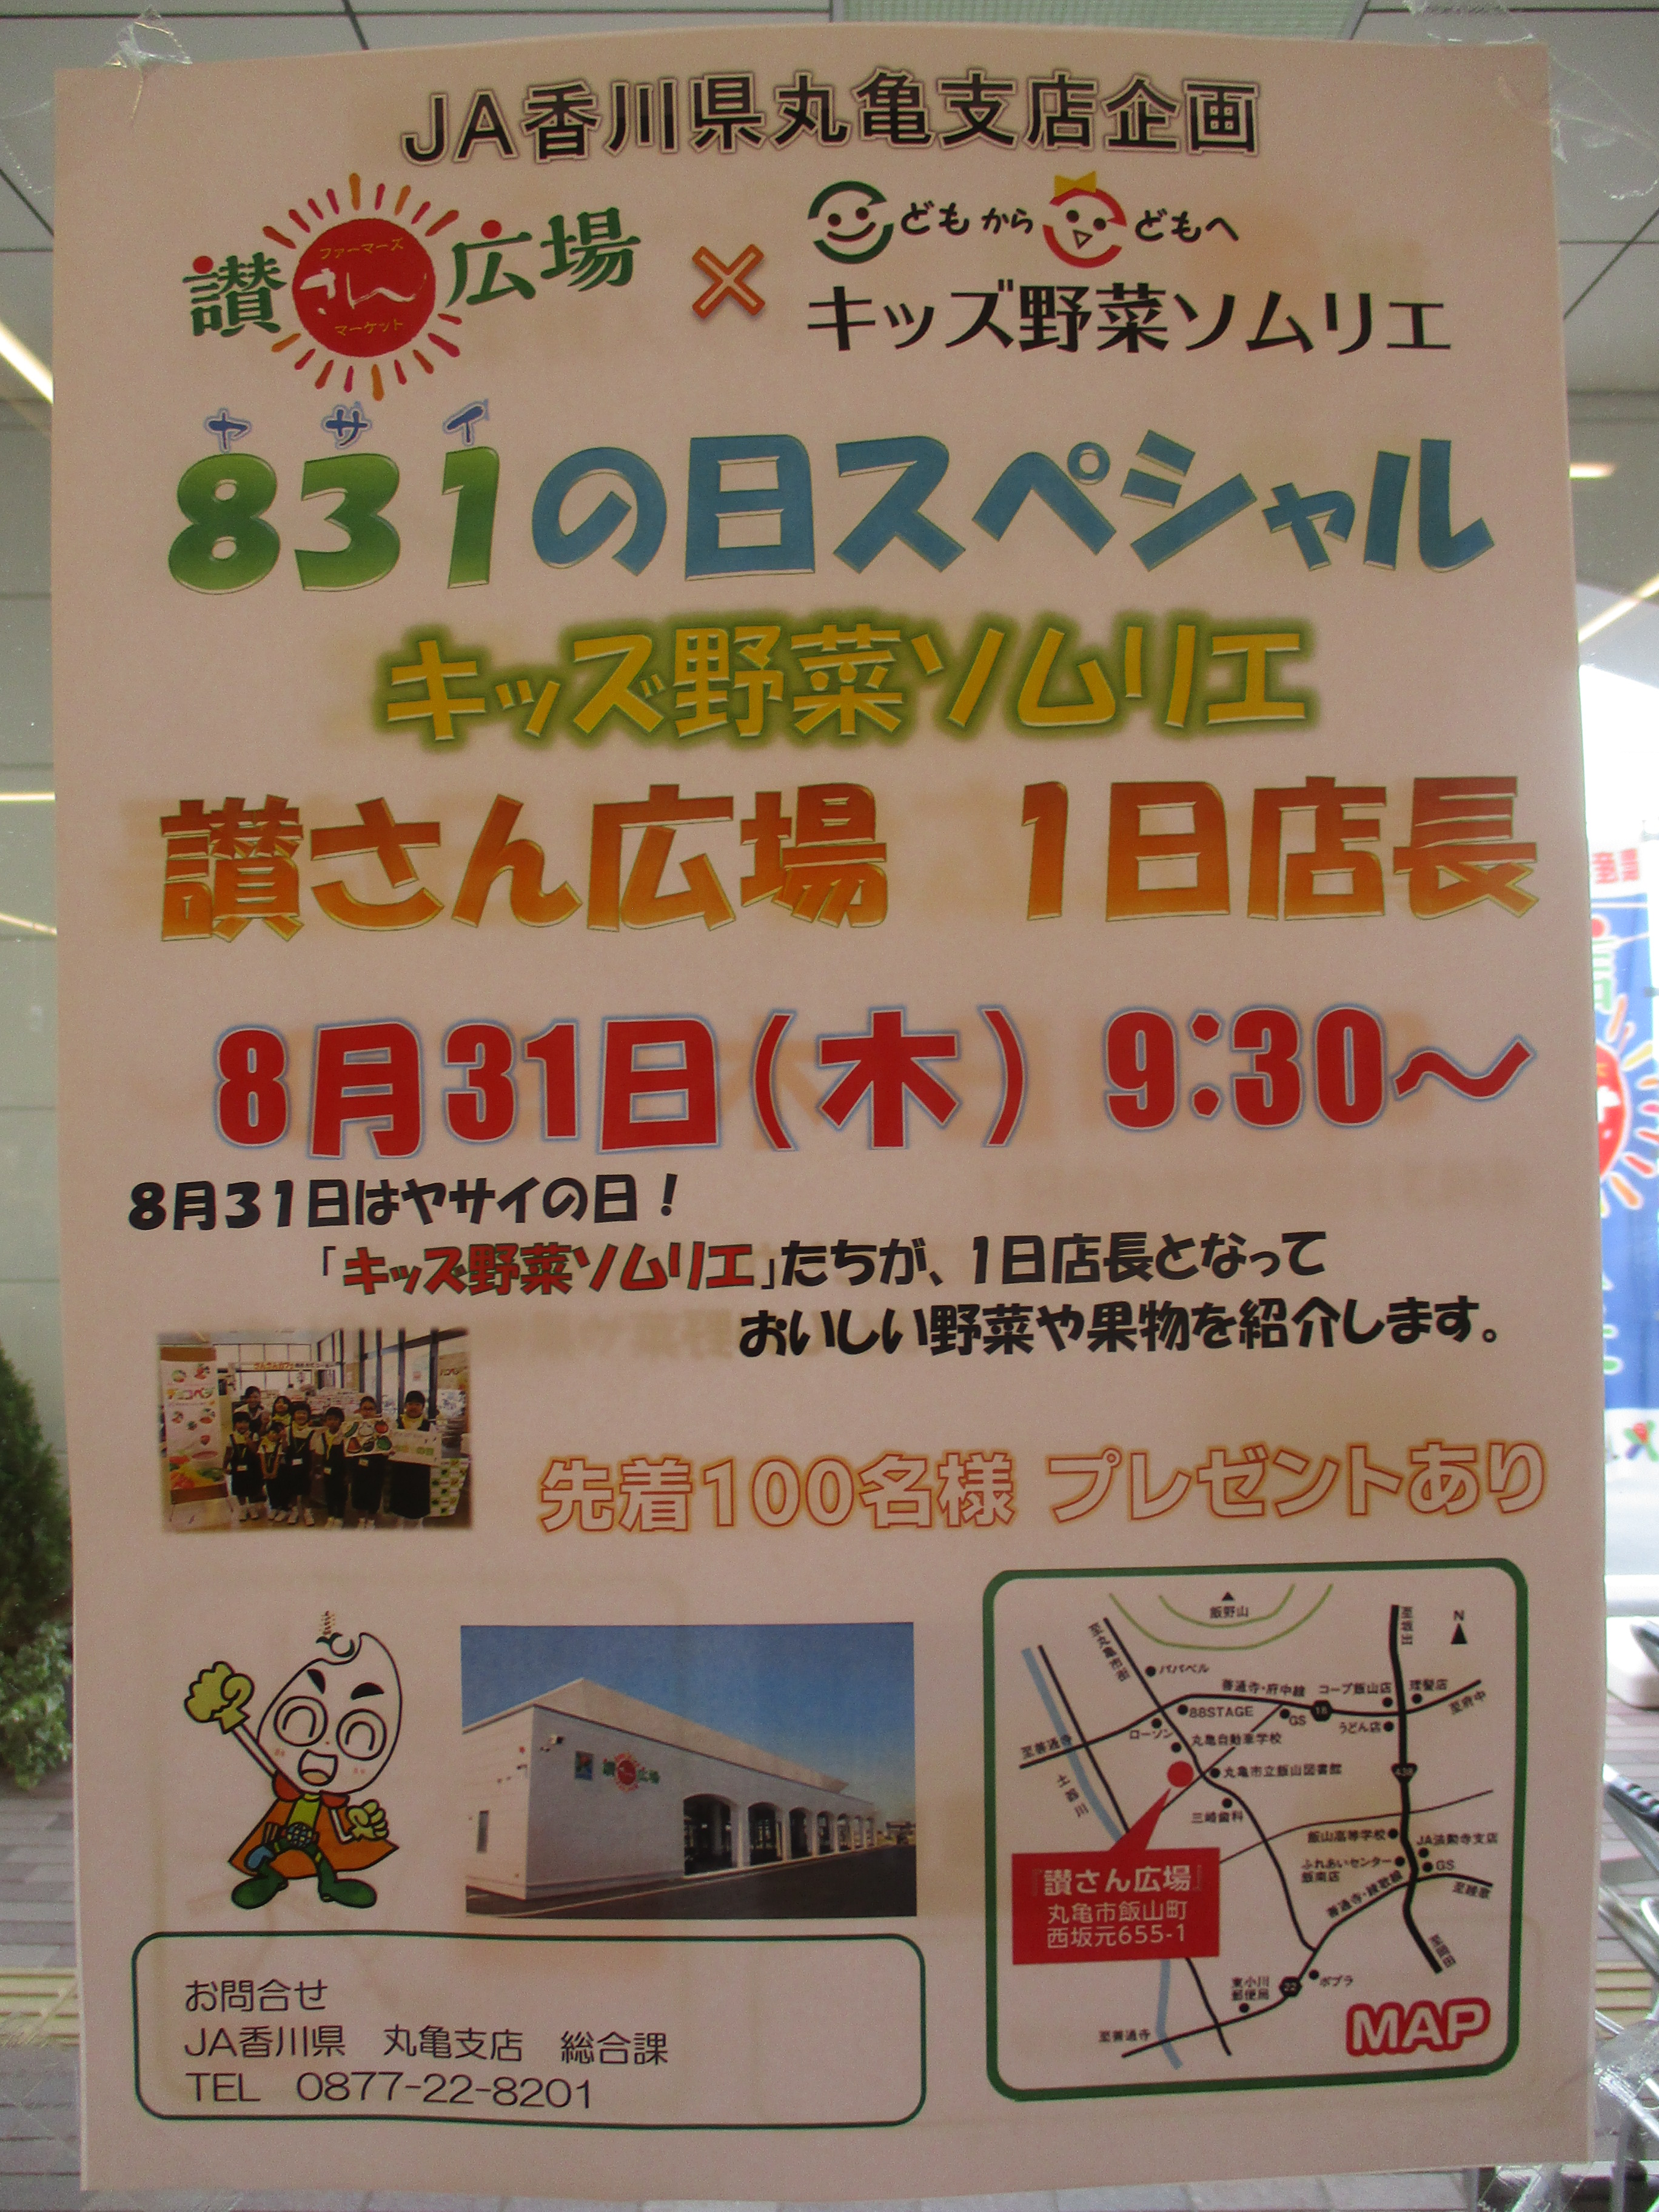 ８３１ ヤサイ の日イベントのお知らせ Ja香川県 香川県農業協同組合